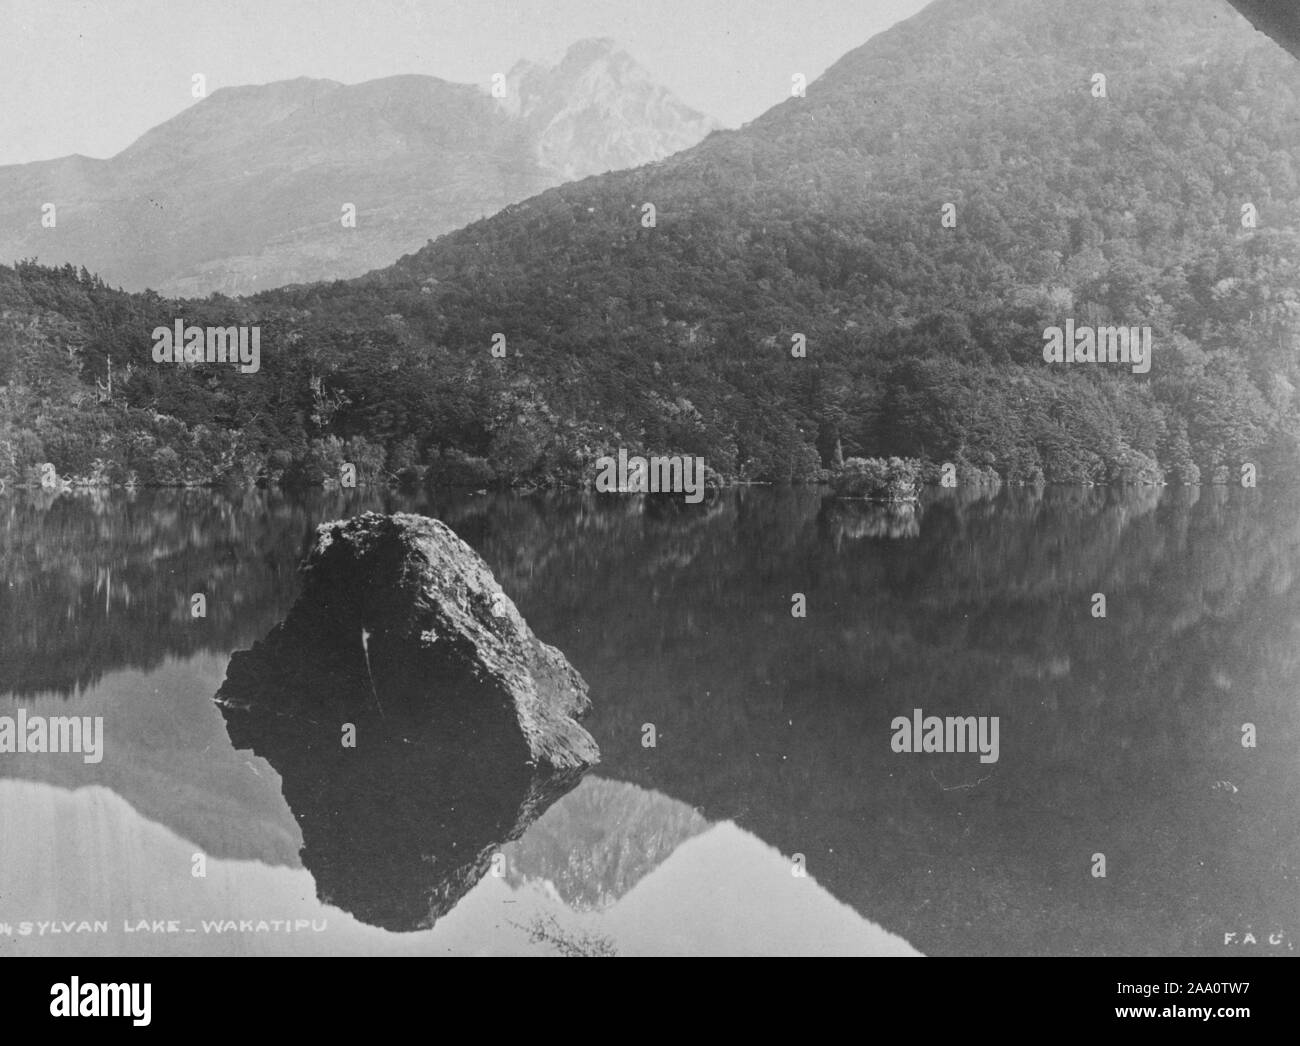 Bianco e nero fotografia paesaggio del lago Sylvan circondato da colline boscose, nella regione di Otago di South Island, in Nuova Zelanda, dal fotografo Frank Coxhead, 1885. Dalla Biblioteca Pubblica di New York. () Foto Stock